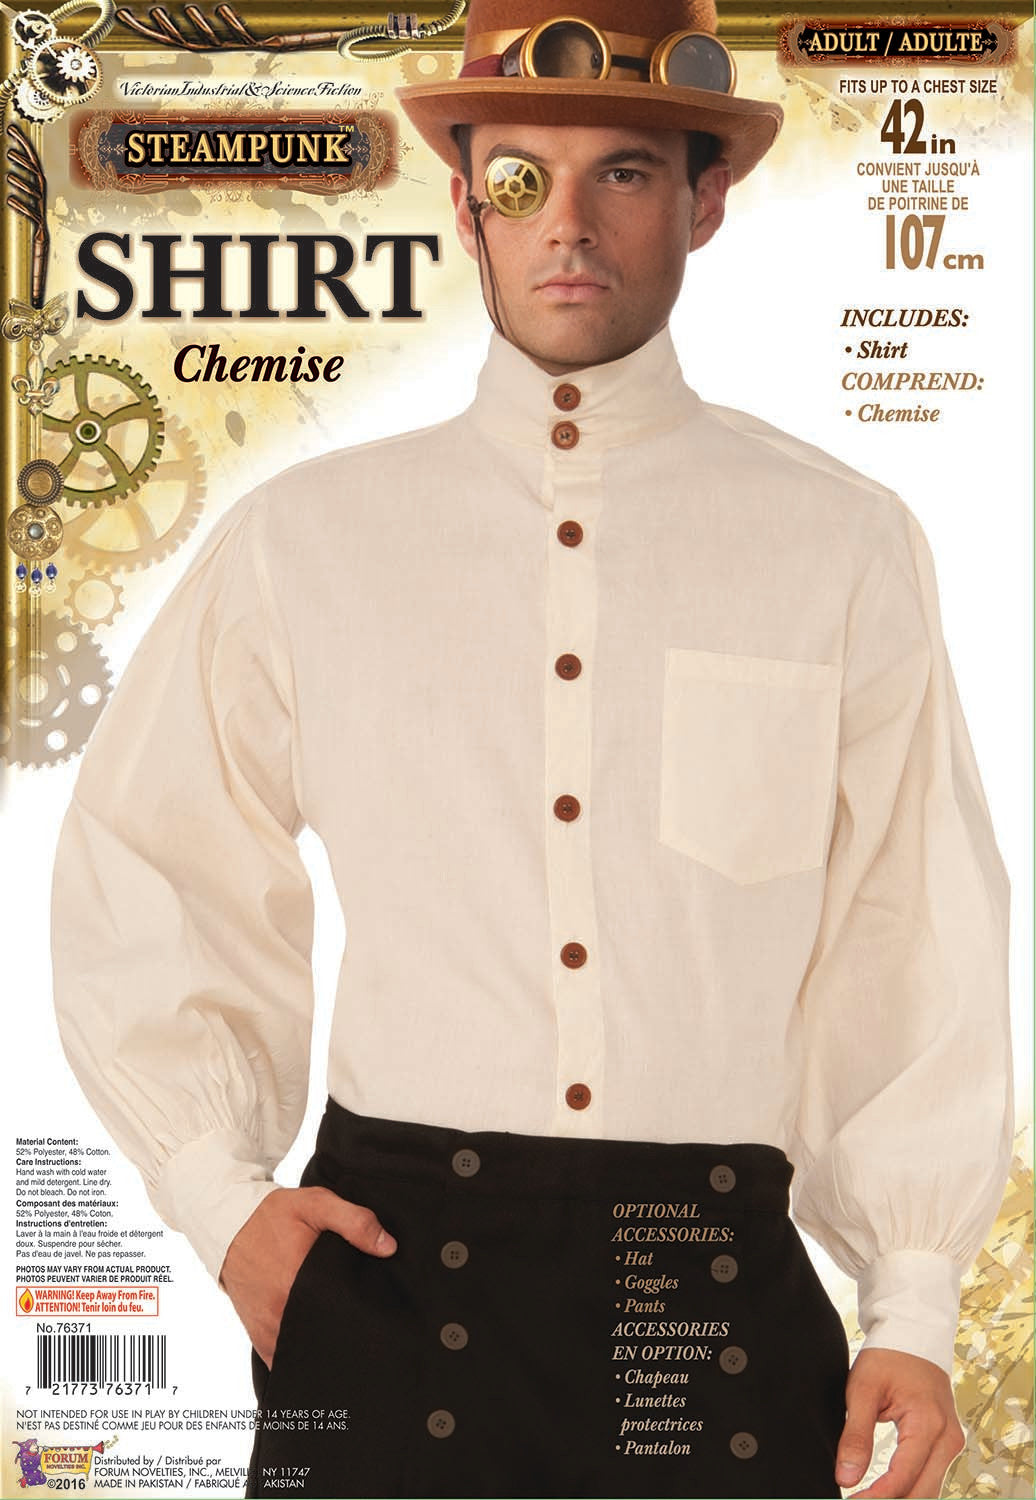 Steampunk Shirt - Standard Adult Size